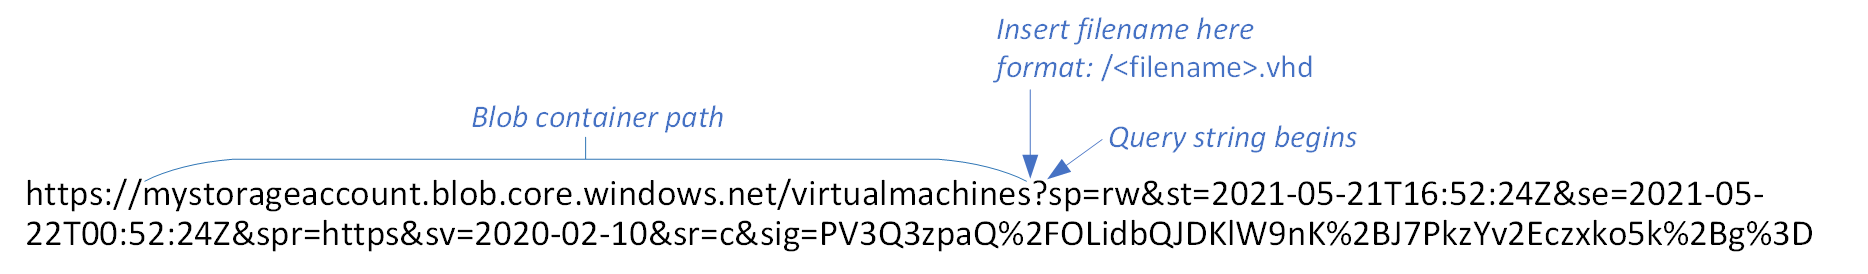 Grafik einer Blob-SAS-URL mit Containerpfad und Ort zum Einfügen des neuen Dateinamens mit Bezeichnung